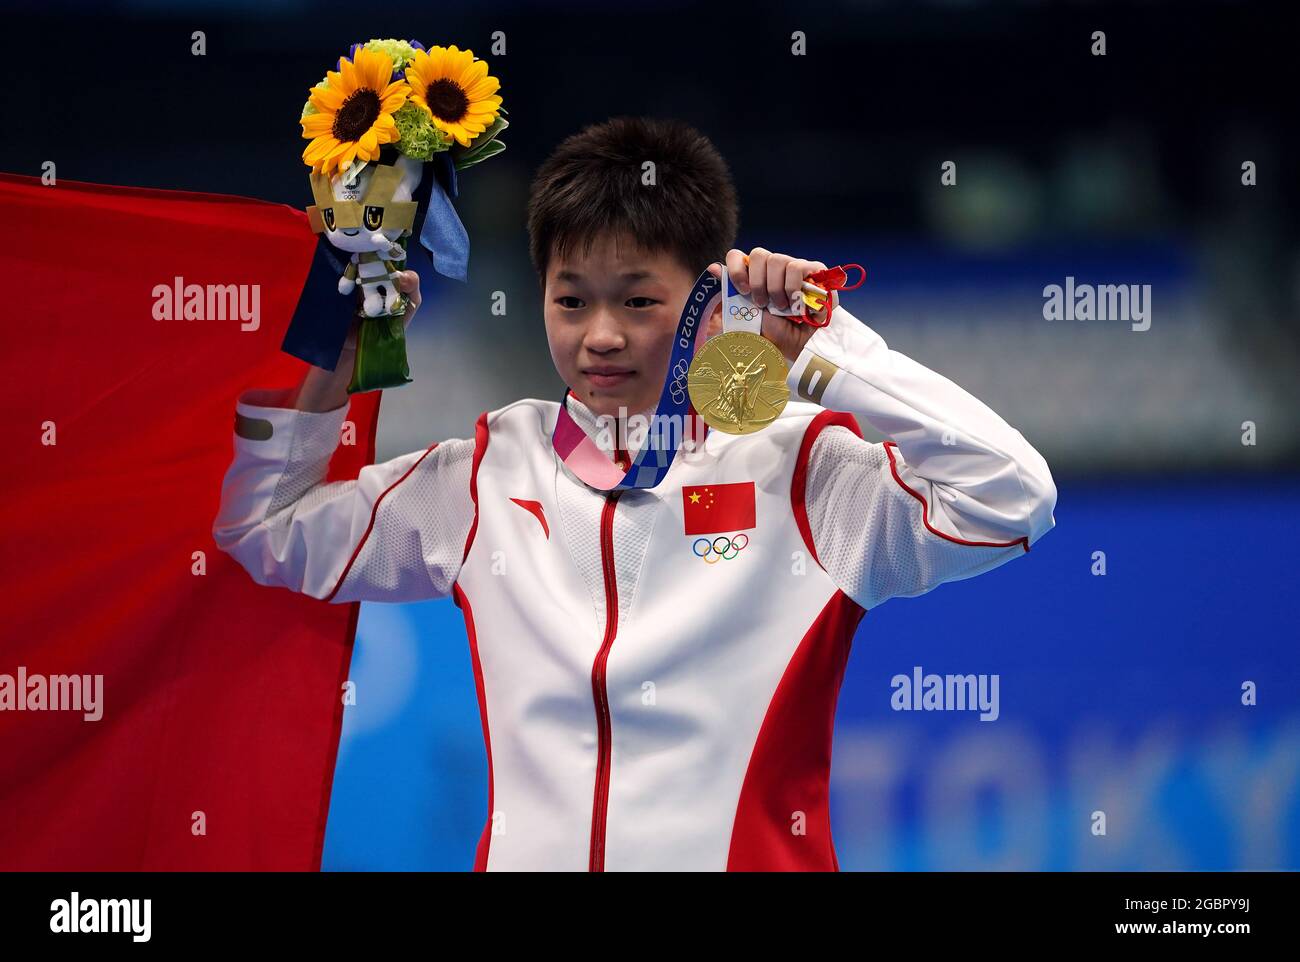 Die chinesische Quan Hongchan mit ihrer Goldmedaille für die 10-m-Plattform der Frauen beim Tauchen im Tokyo Aquatics Center am dreizehnten Tag der Olympischen Spiele in Tokio 2020 in Japan. Bilddatum: Donnerstag, 5. August 2021. Stockfoto